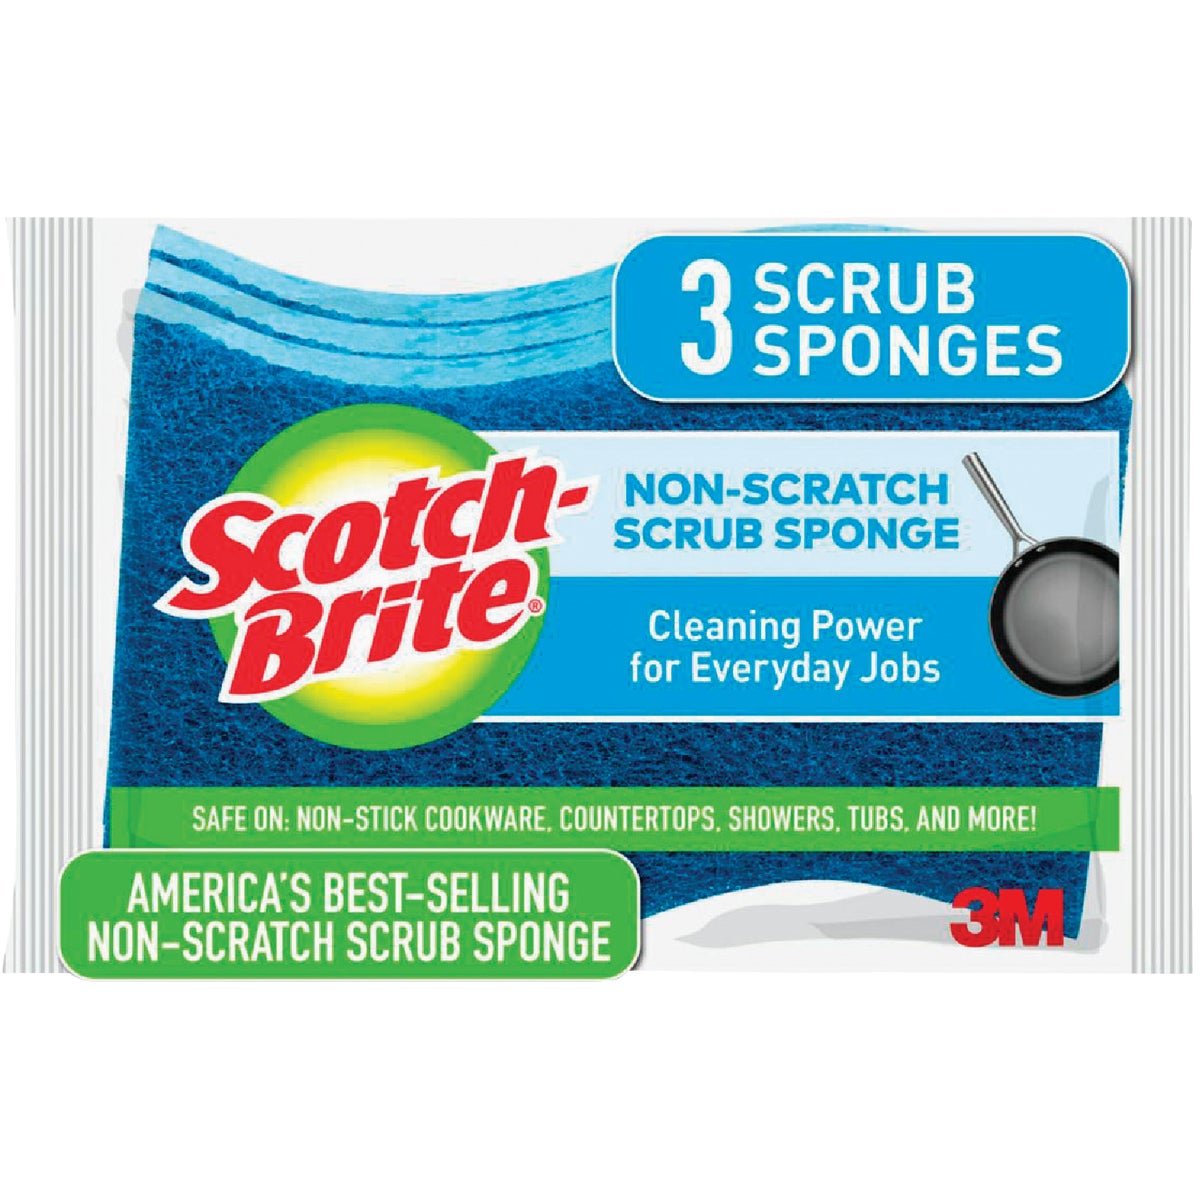 3M Scotch-Brite 4.4 In. x 2.6 In. Blue Scratch Free Scrub Sponge (3-Count)